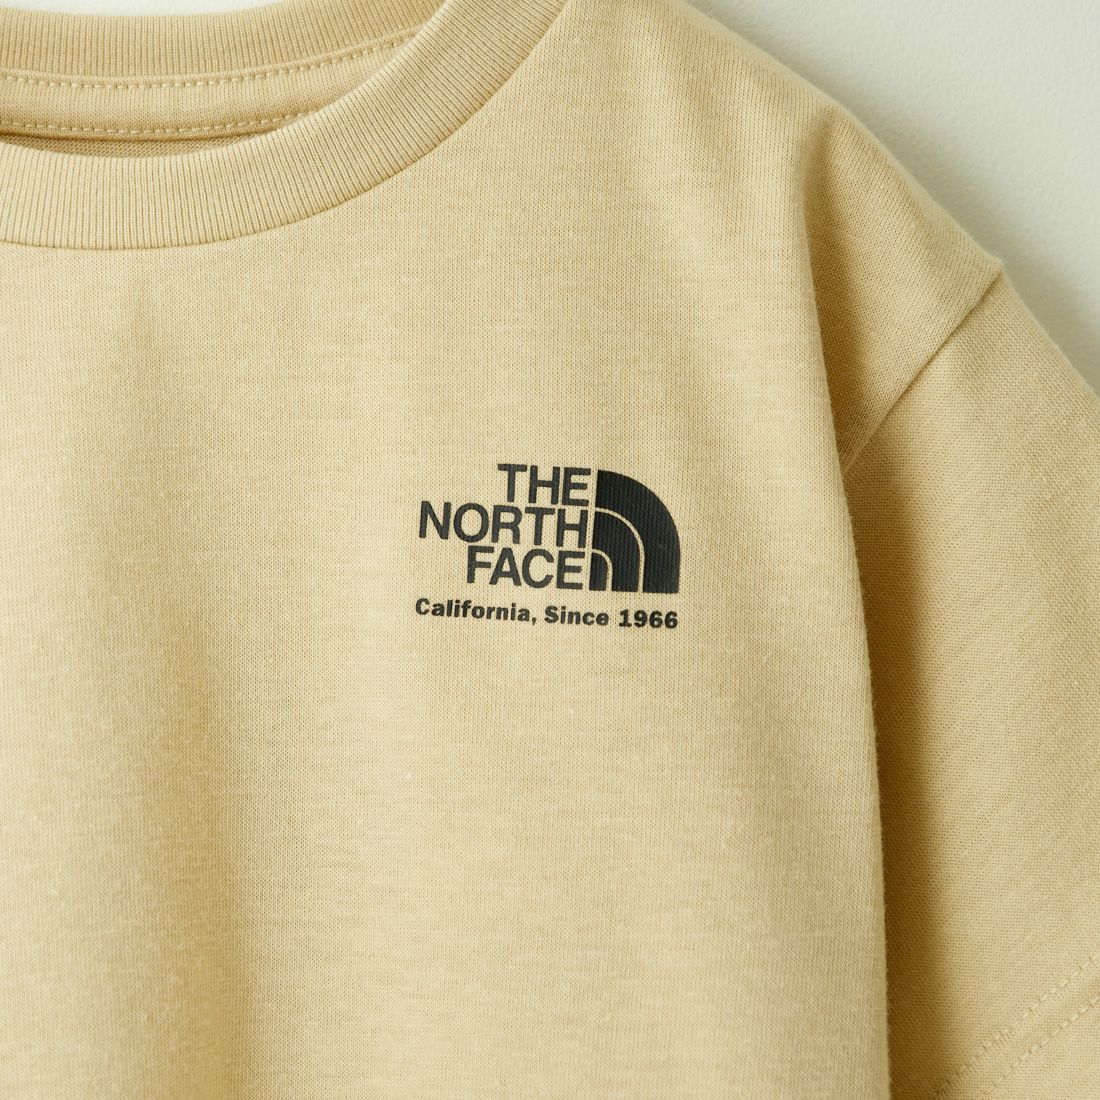 THE NORTH FACE [ザ ノースフェイス] キッズショートスリーブヒストリカルロゴTシャツ [NTJ32356] GL